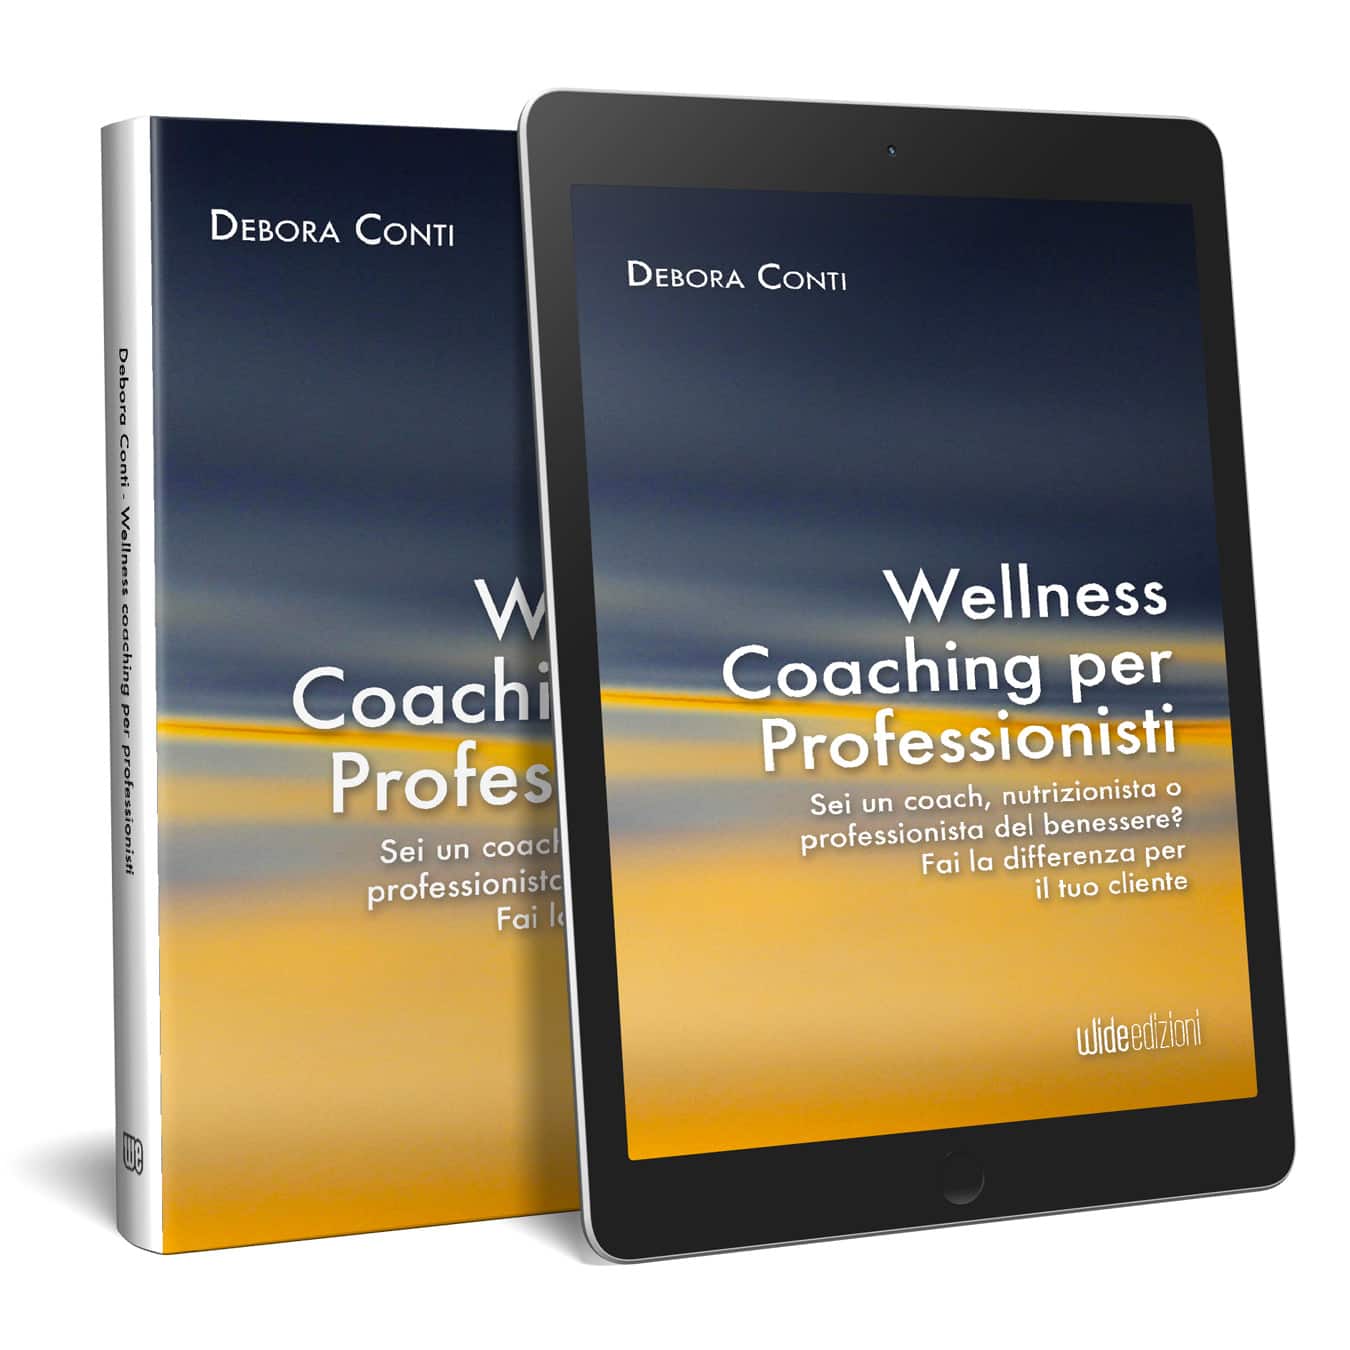 Wellness Coaching per Professionisti  - Sei un coach, nutrizionista o professionista del benessere? Fai la differenza per il tuo cliente